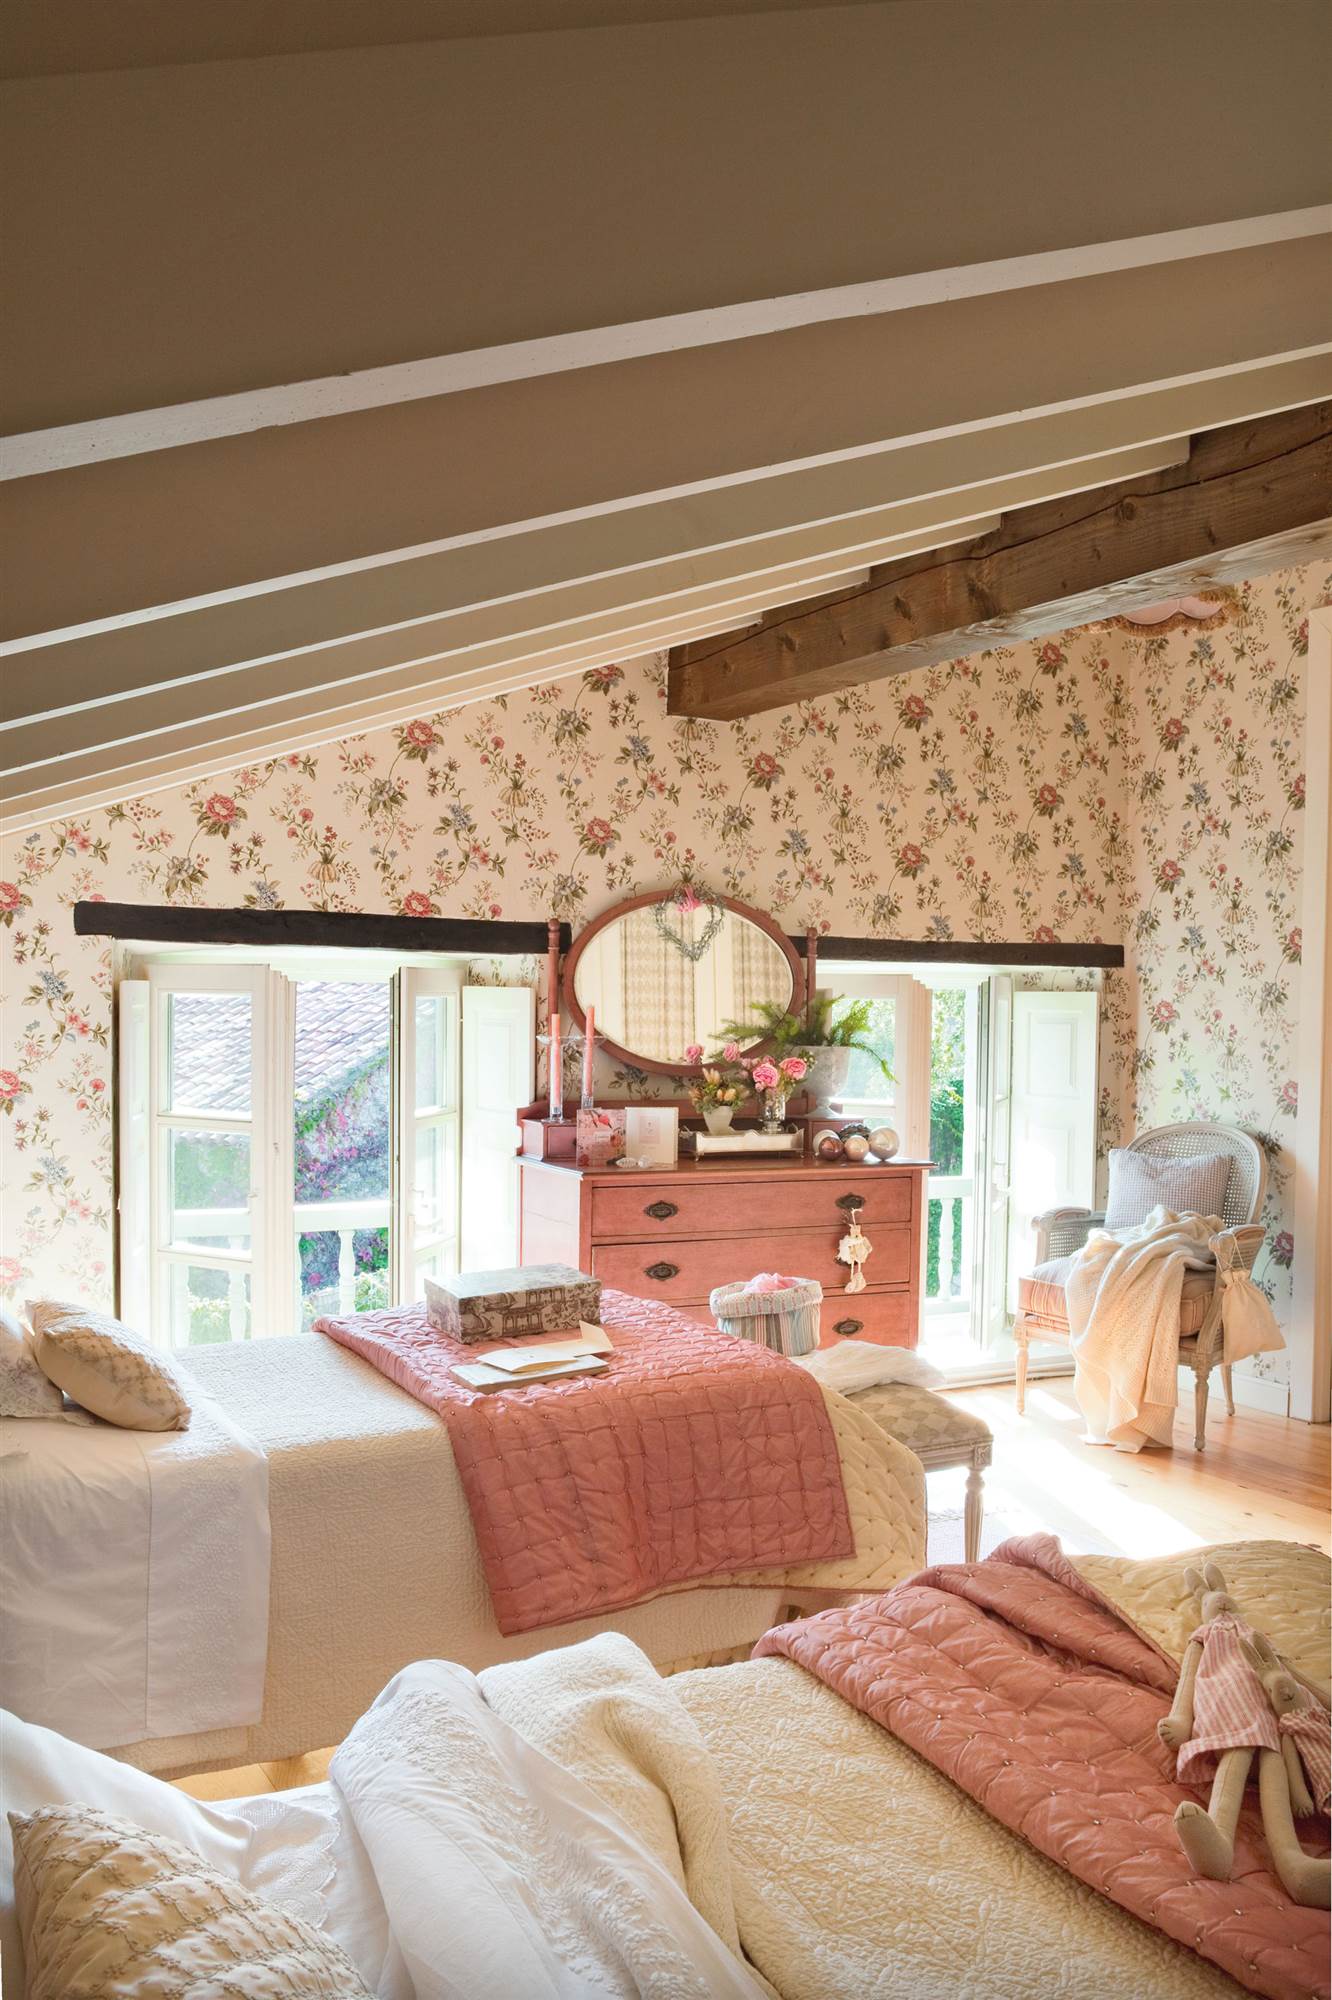 Dormitorio infantil abuhardillado con papel pintado floral y dos camas iguales.